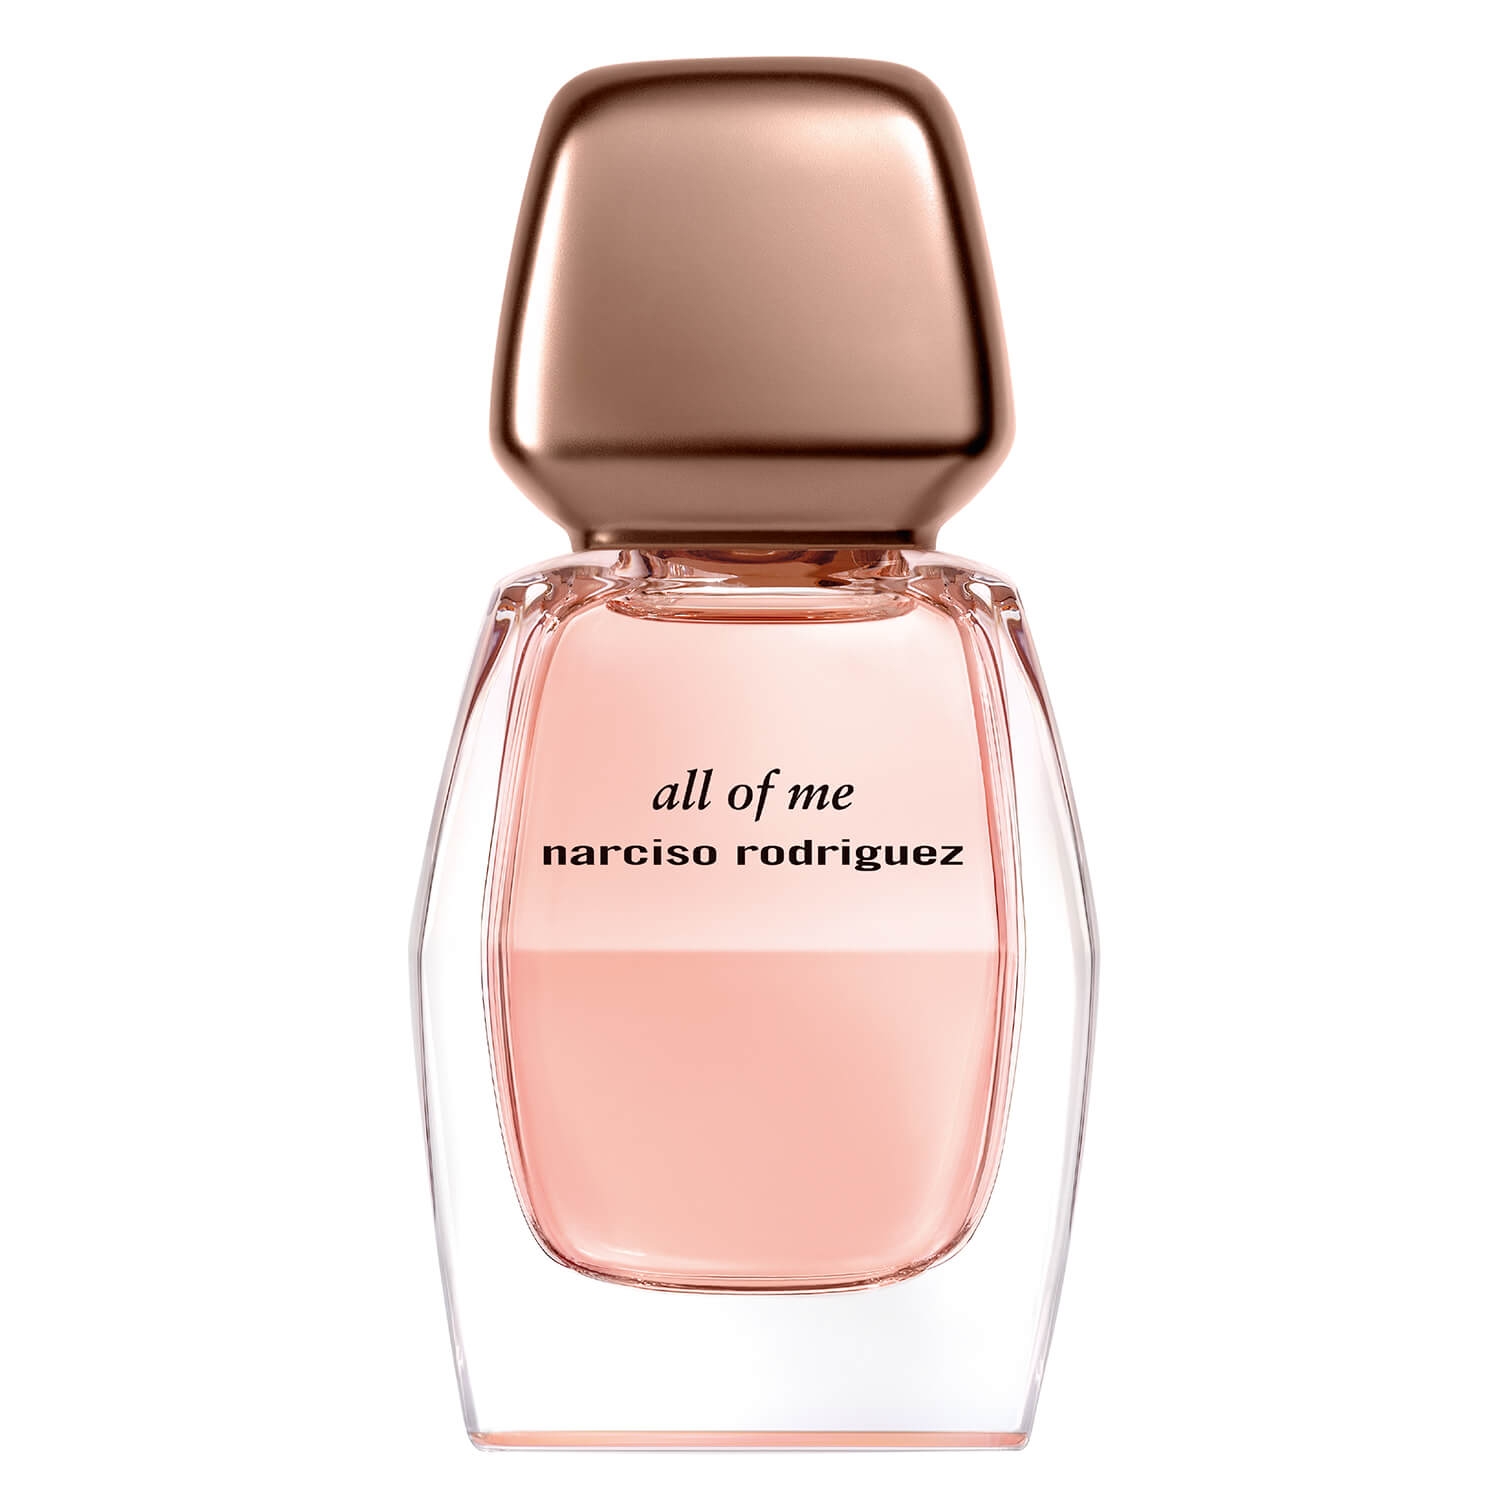 Produktbild von Narciso - All Of Me Eau de Parfum